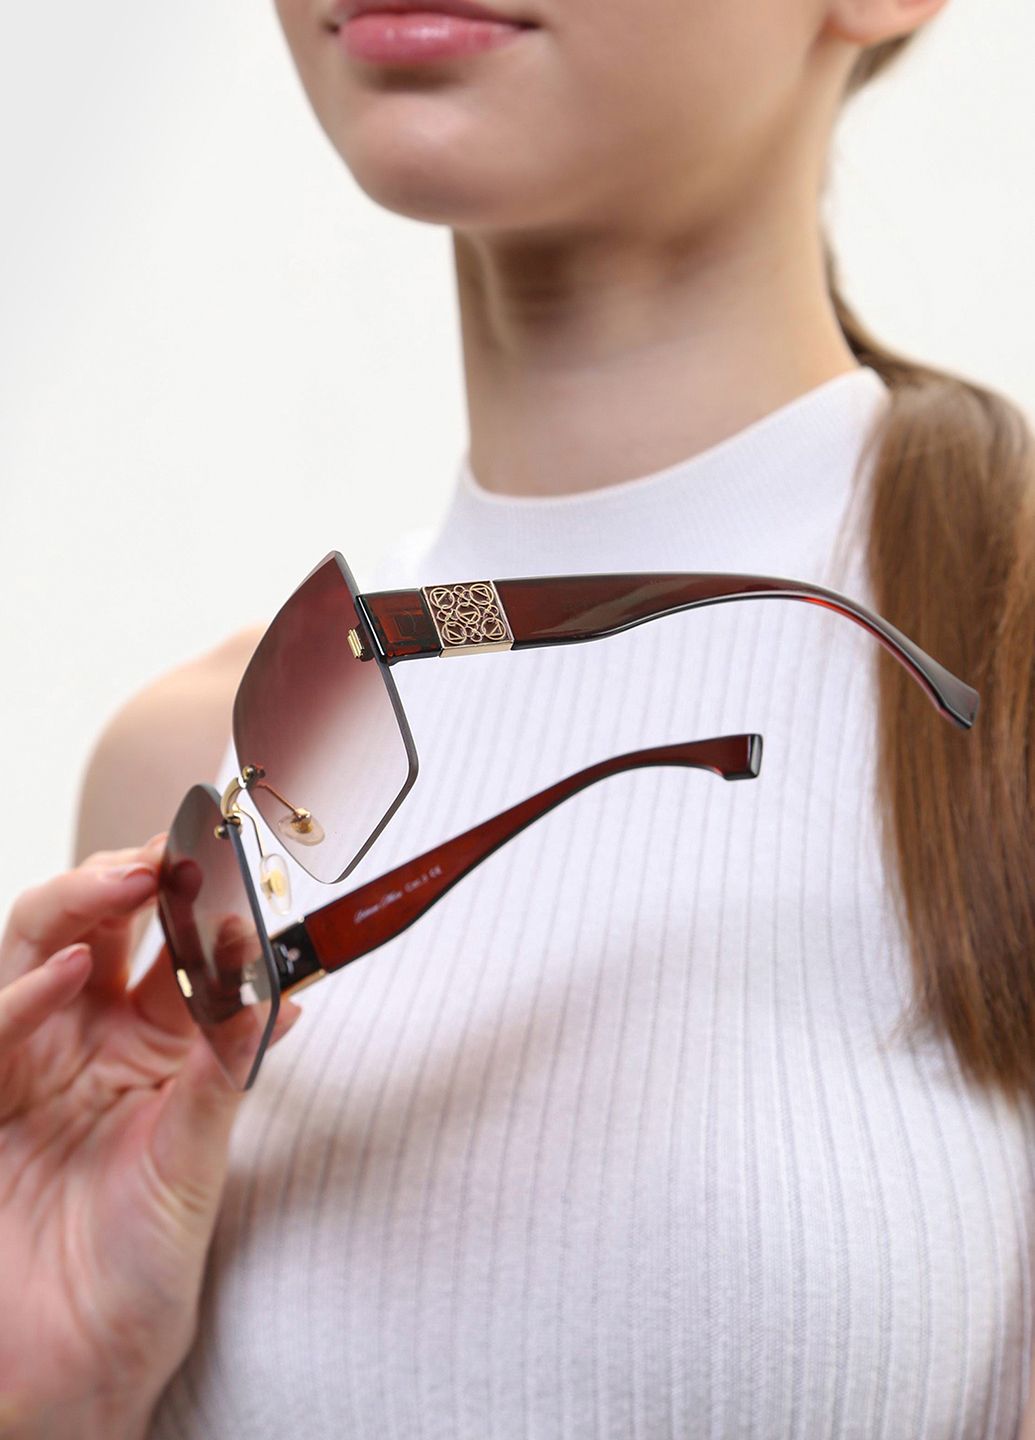 Купить Женские солнцезащитные очки Rebecca Moore RM17009 118021 - Коричневый в интернет-магазине